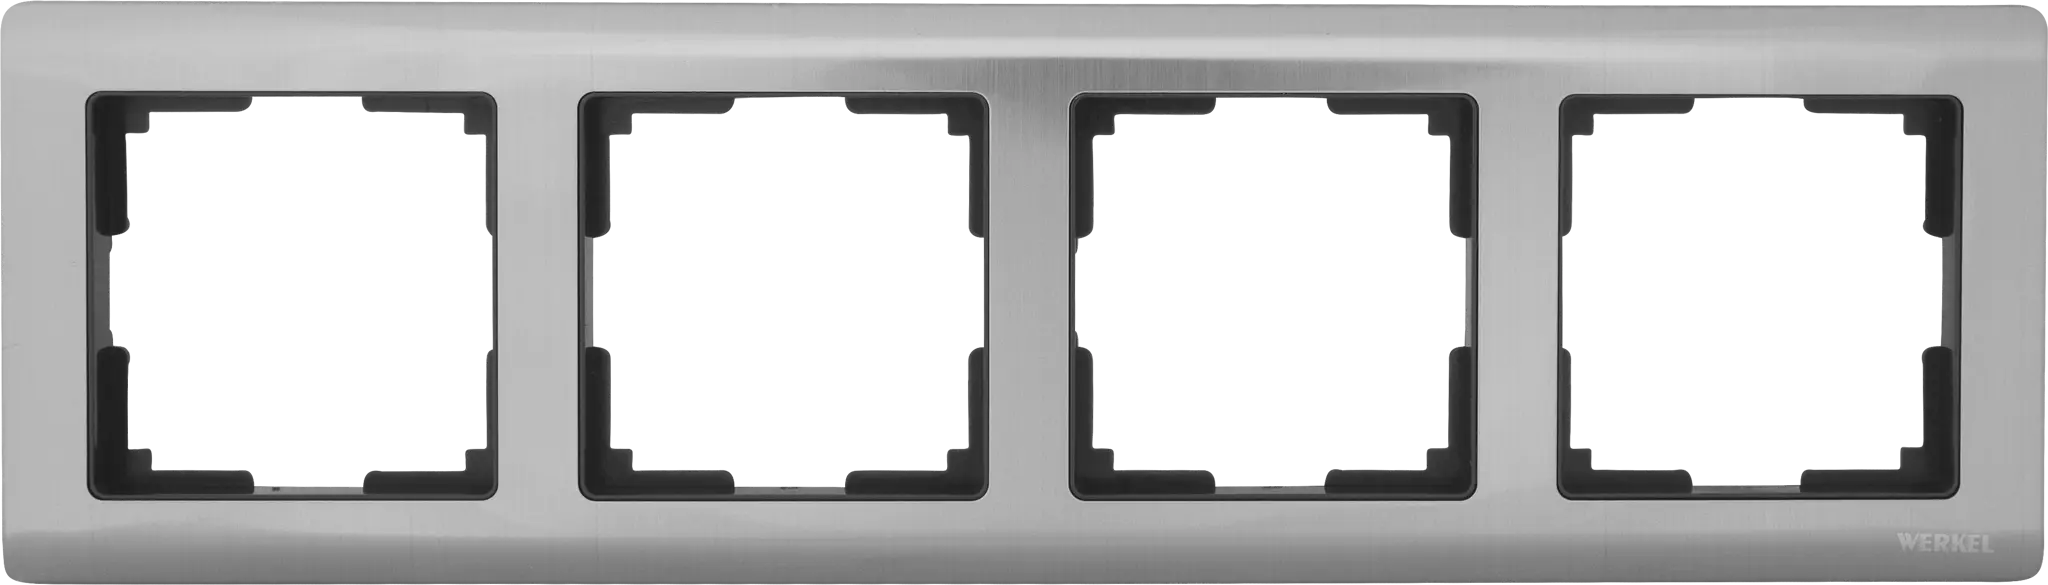 Рамка для розеток и выключателей Werkel Metallic 4 поста металл цвет глянцевый никель рамка для розеток и выключателей werkel aluminium 2 поста металл алюминий